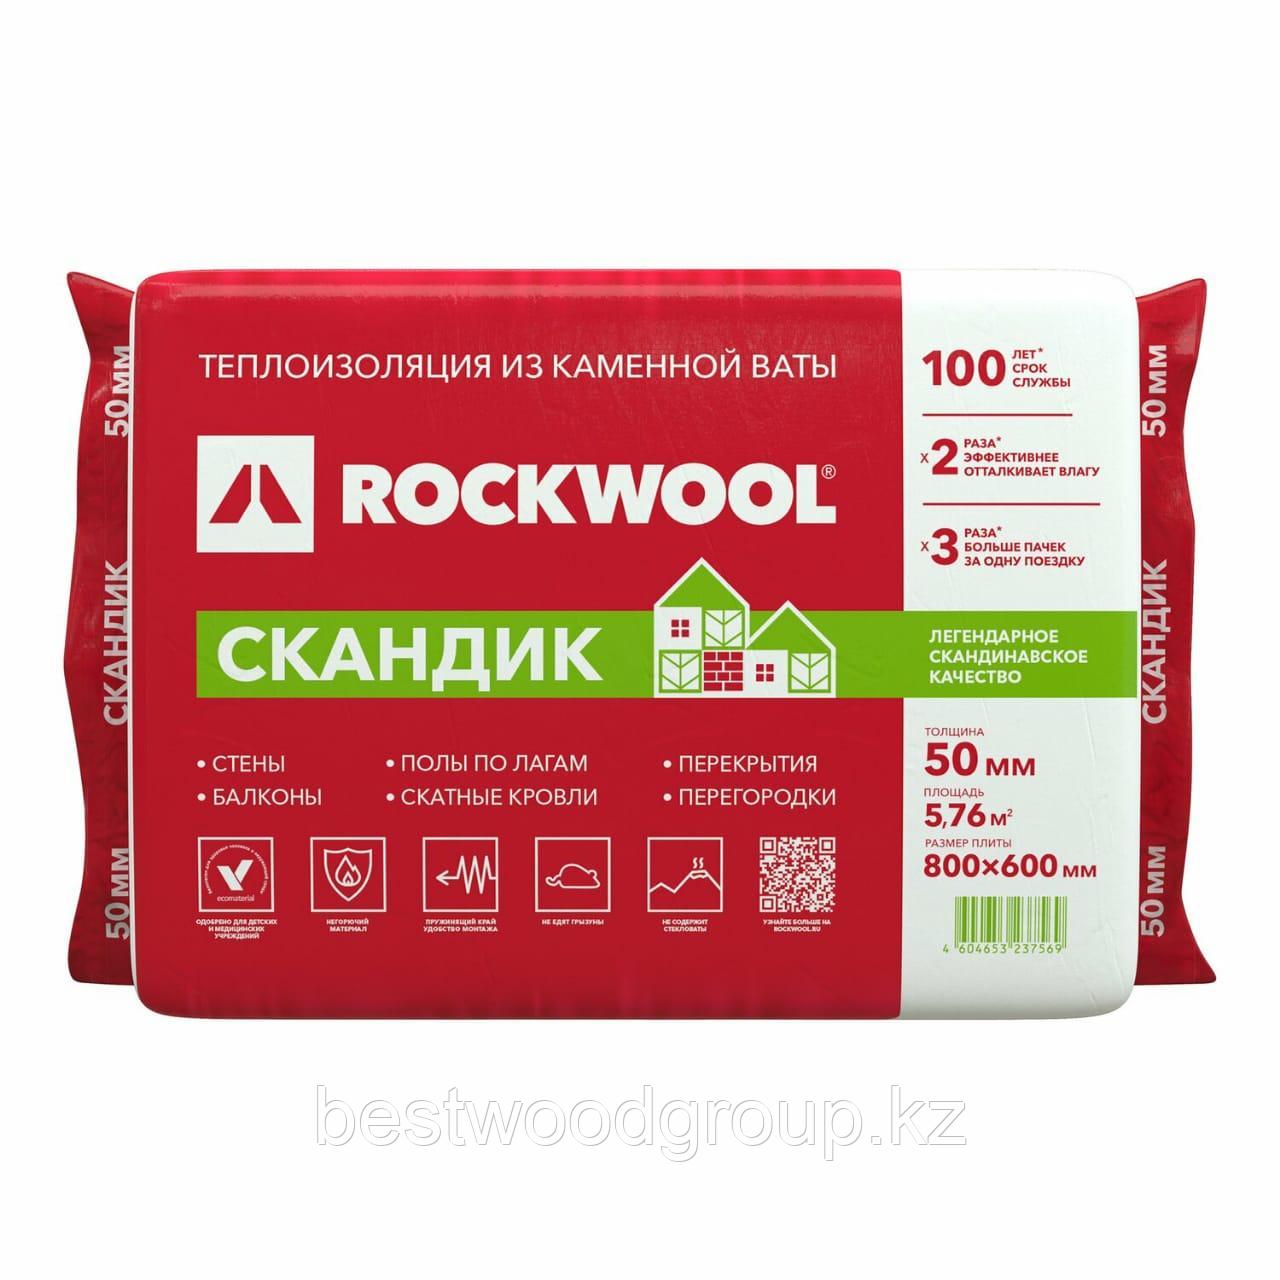 ROCKWOOL СКАНДИК - теплоизоляция из каменной ваты